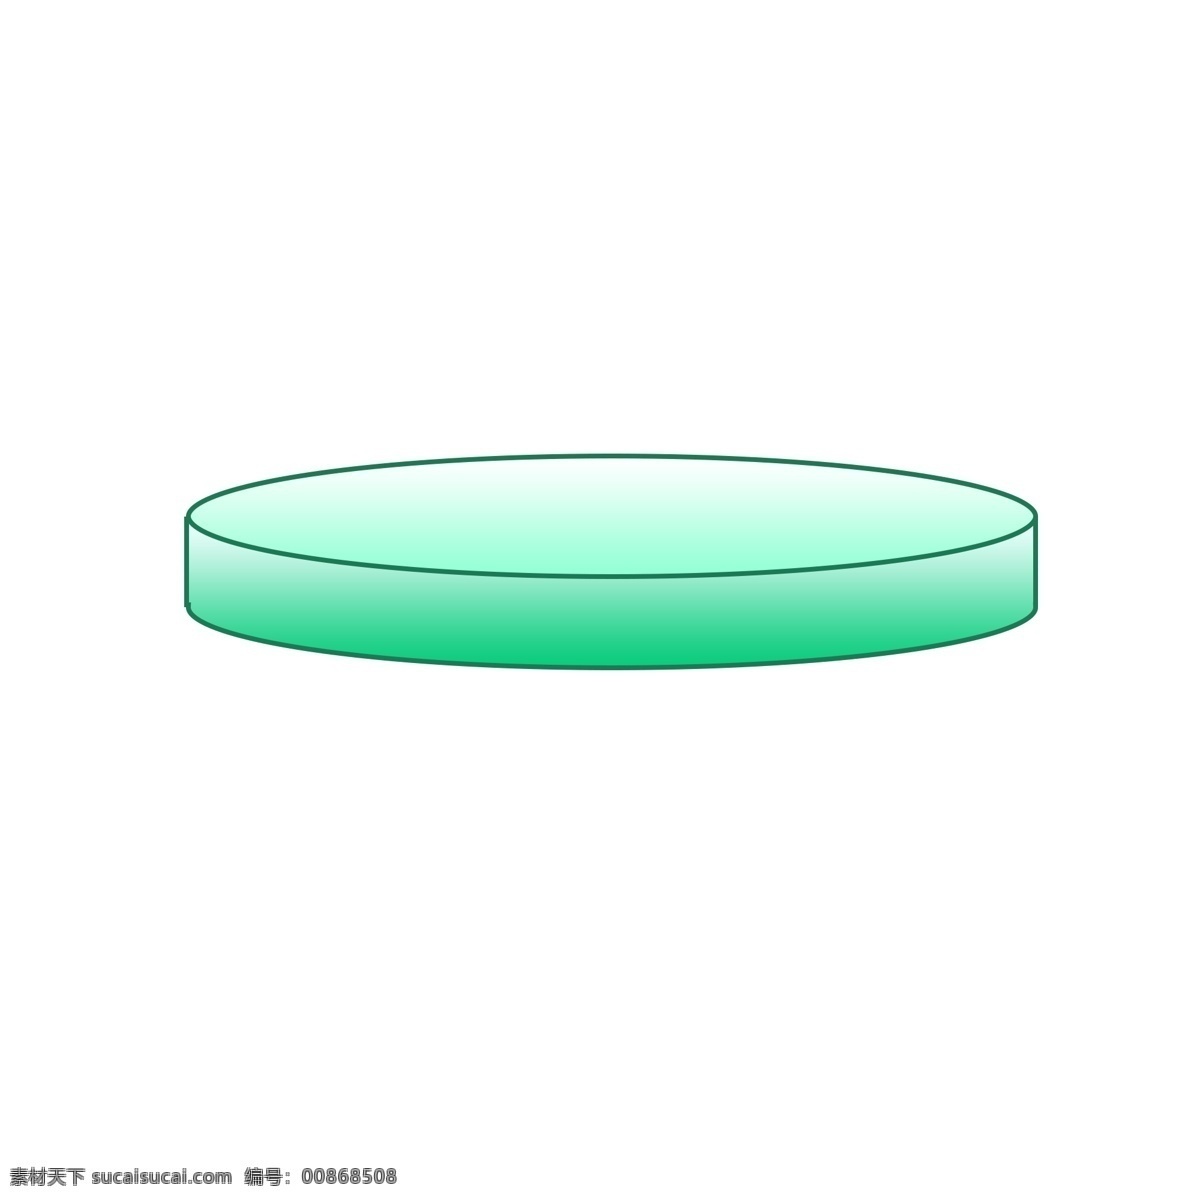 圆形圆盘图案 绿色 圆盘 椭圆 图案